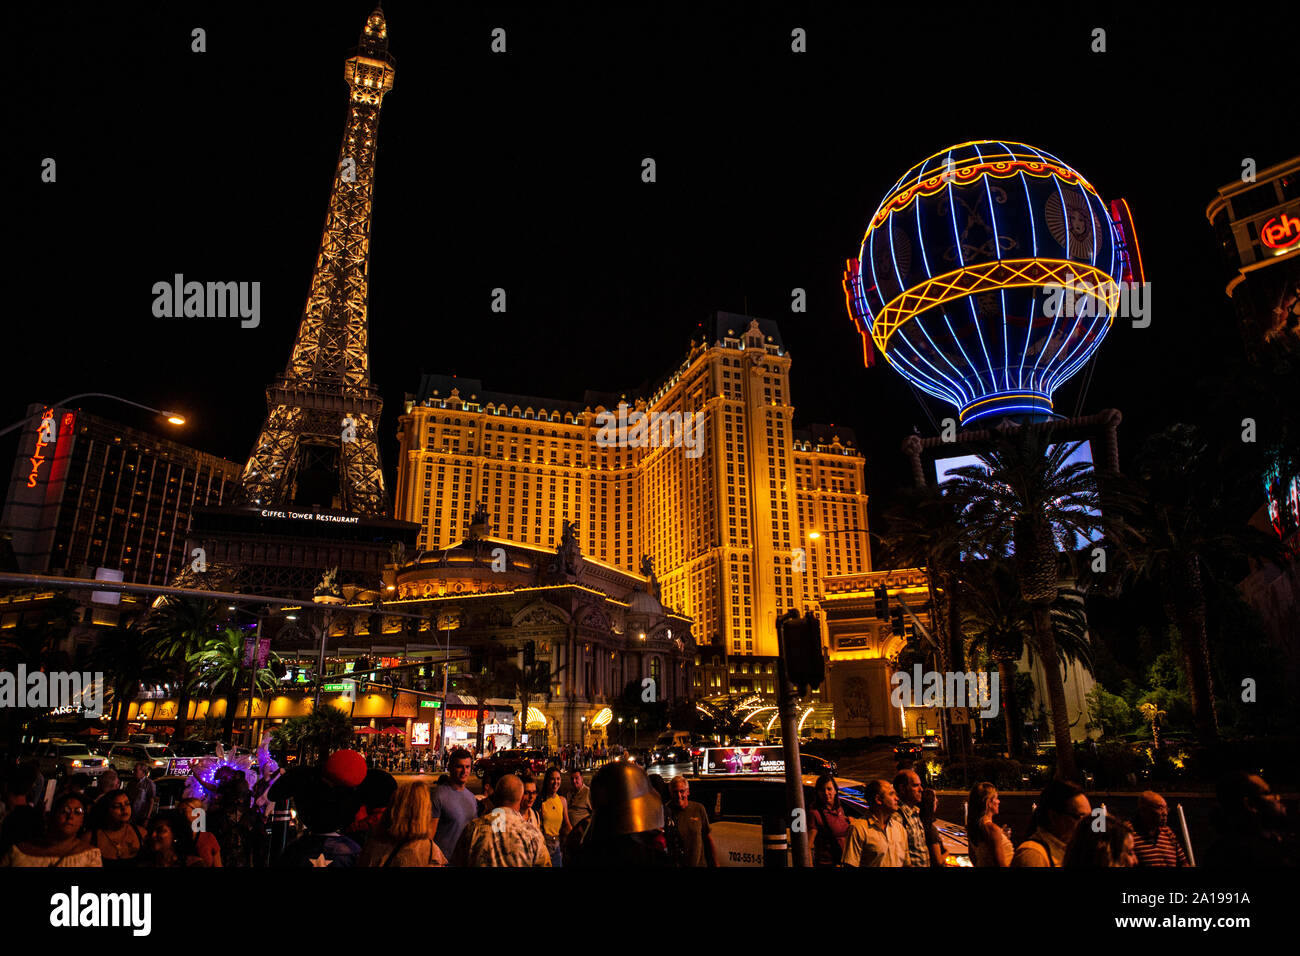 Spielerstadt Las Vegas in Nevada / USA bei Nacht im Schein der Neonlampen Reklamewänden Photo - Alamy